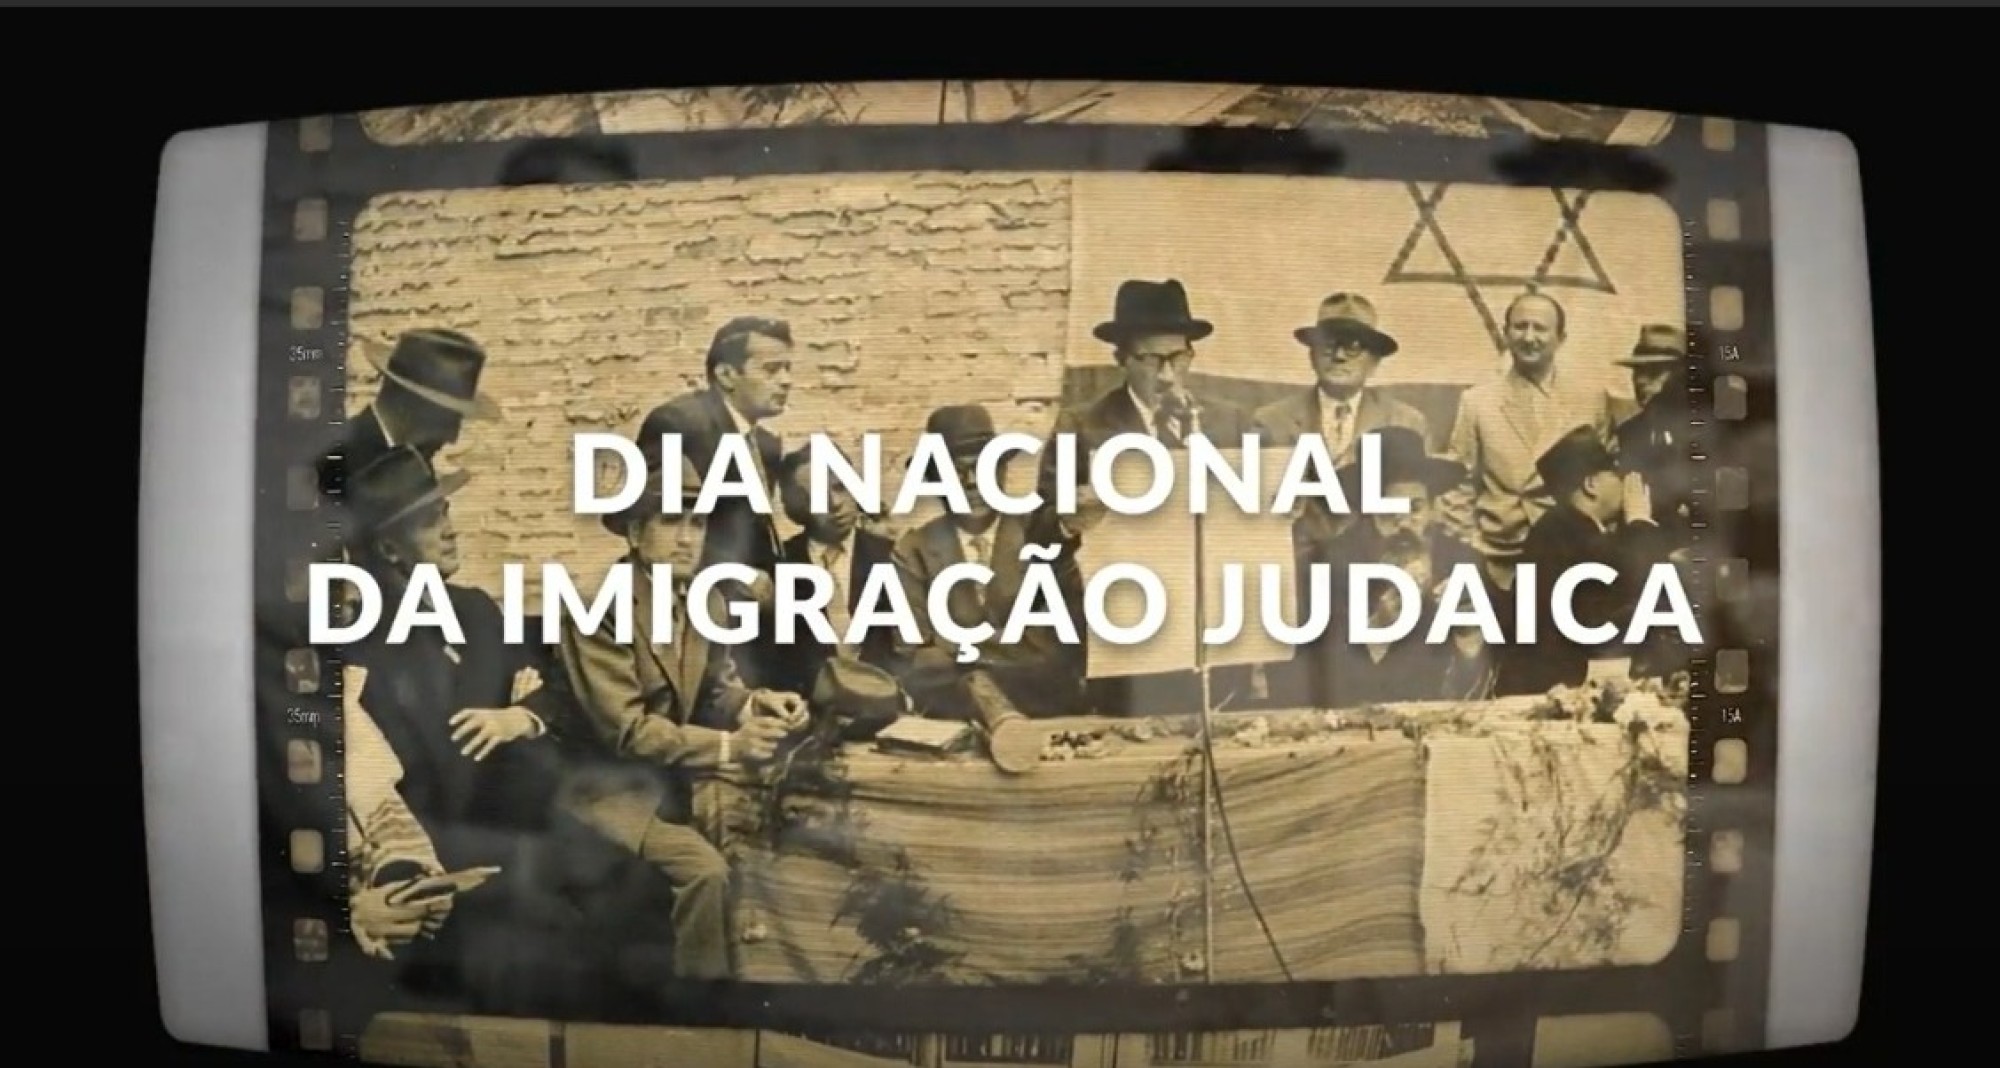 Dia Nacional da Imigração Judaica lembra a contribuição dos judeus na formação da sociedade brasileira - Fundada em 1948, a CONIB – Confederação Israelita do Brasil é o órgão de representação e coordenação política da comunidade judaica brasileira. 